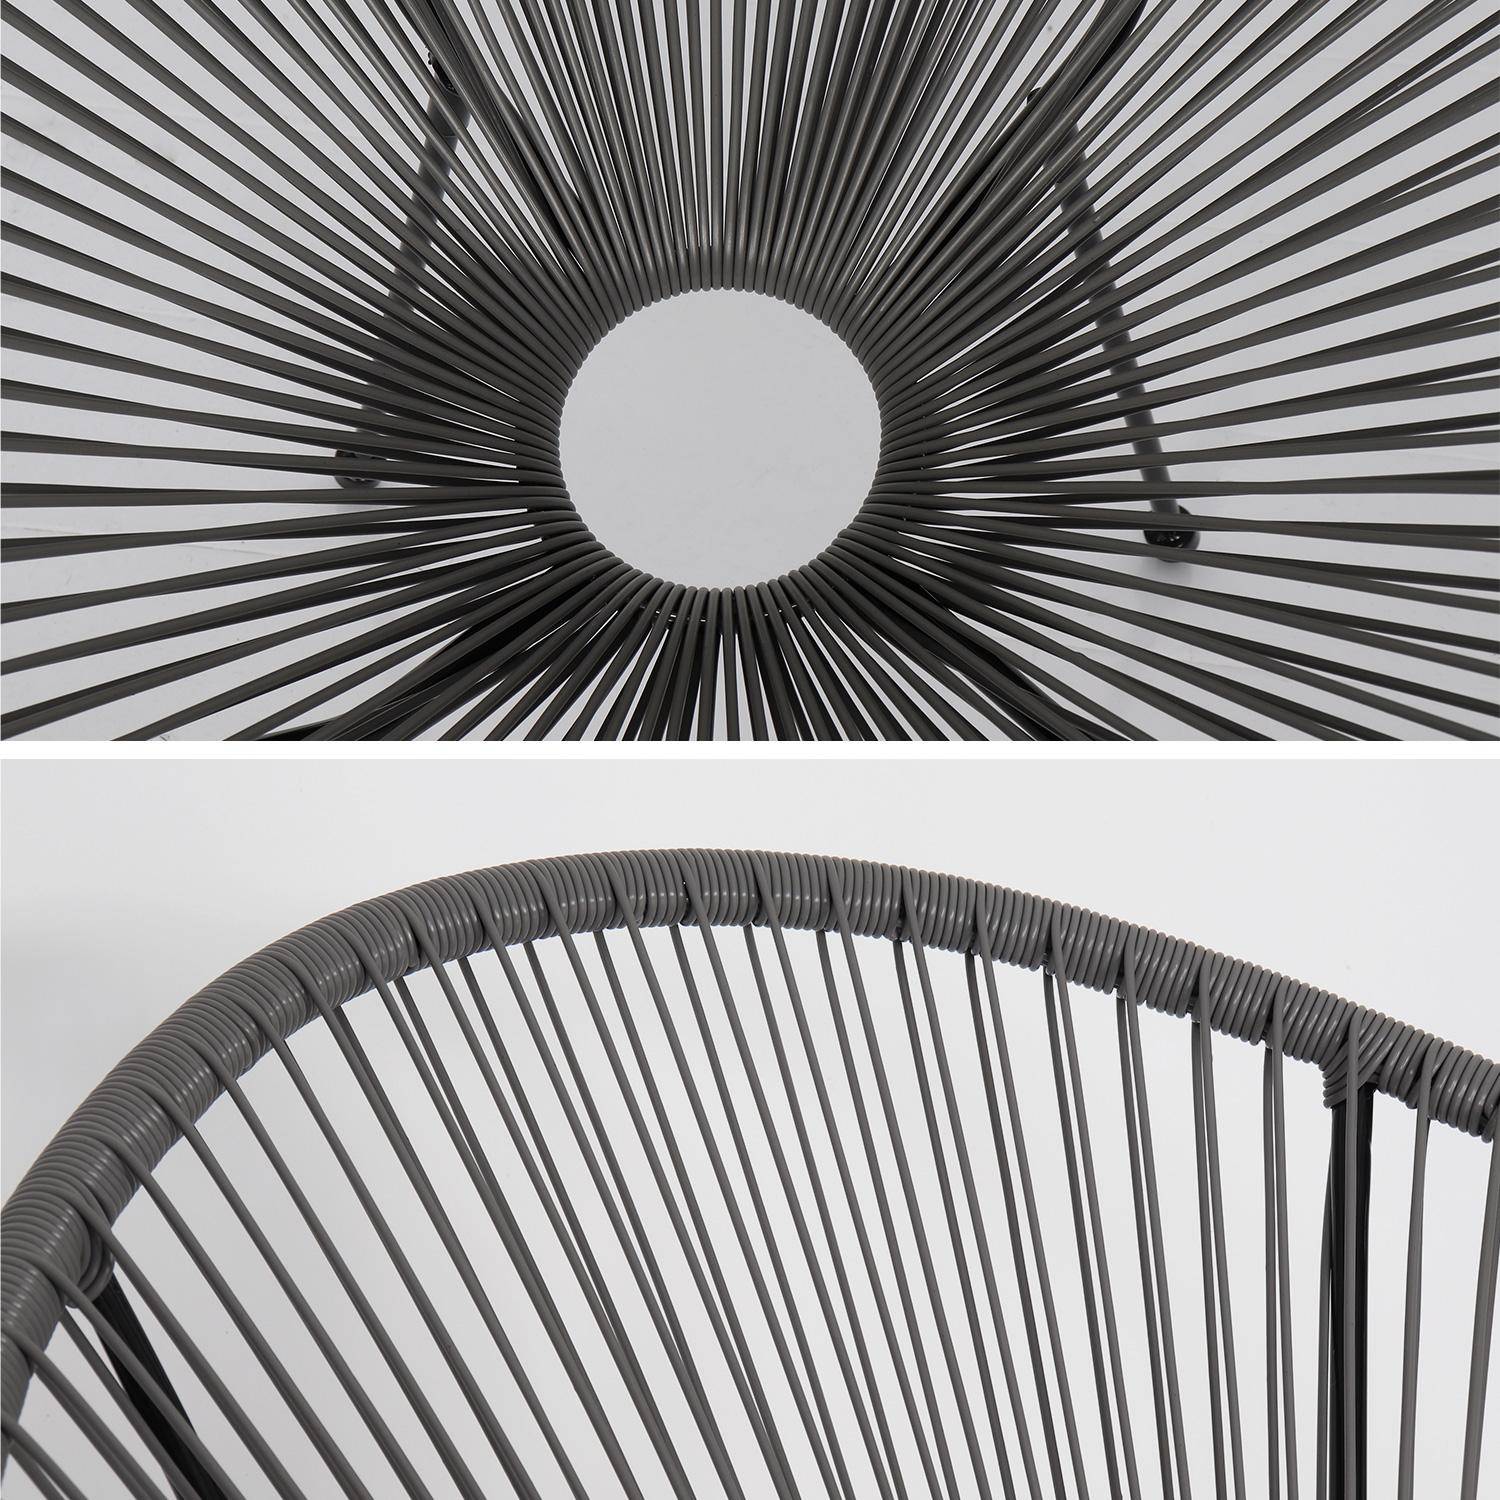 Fauteuil ACAPULCO forme d'oeuf -Taupe - Fauteuil 4 pieds design rétro, cordage plastique, intérieur / extérieur,sweeek,Photo3